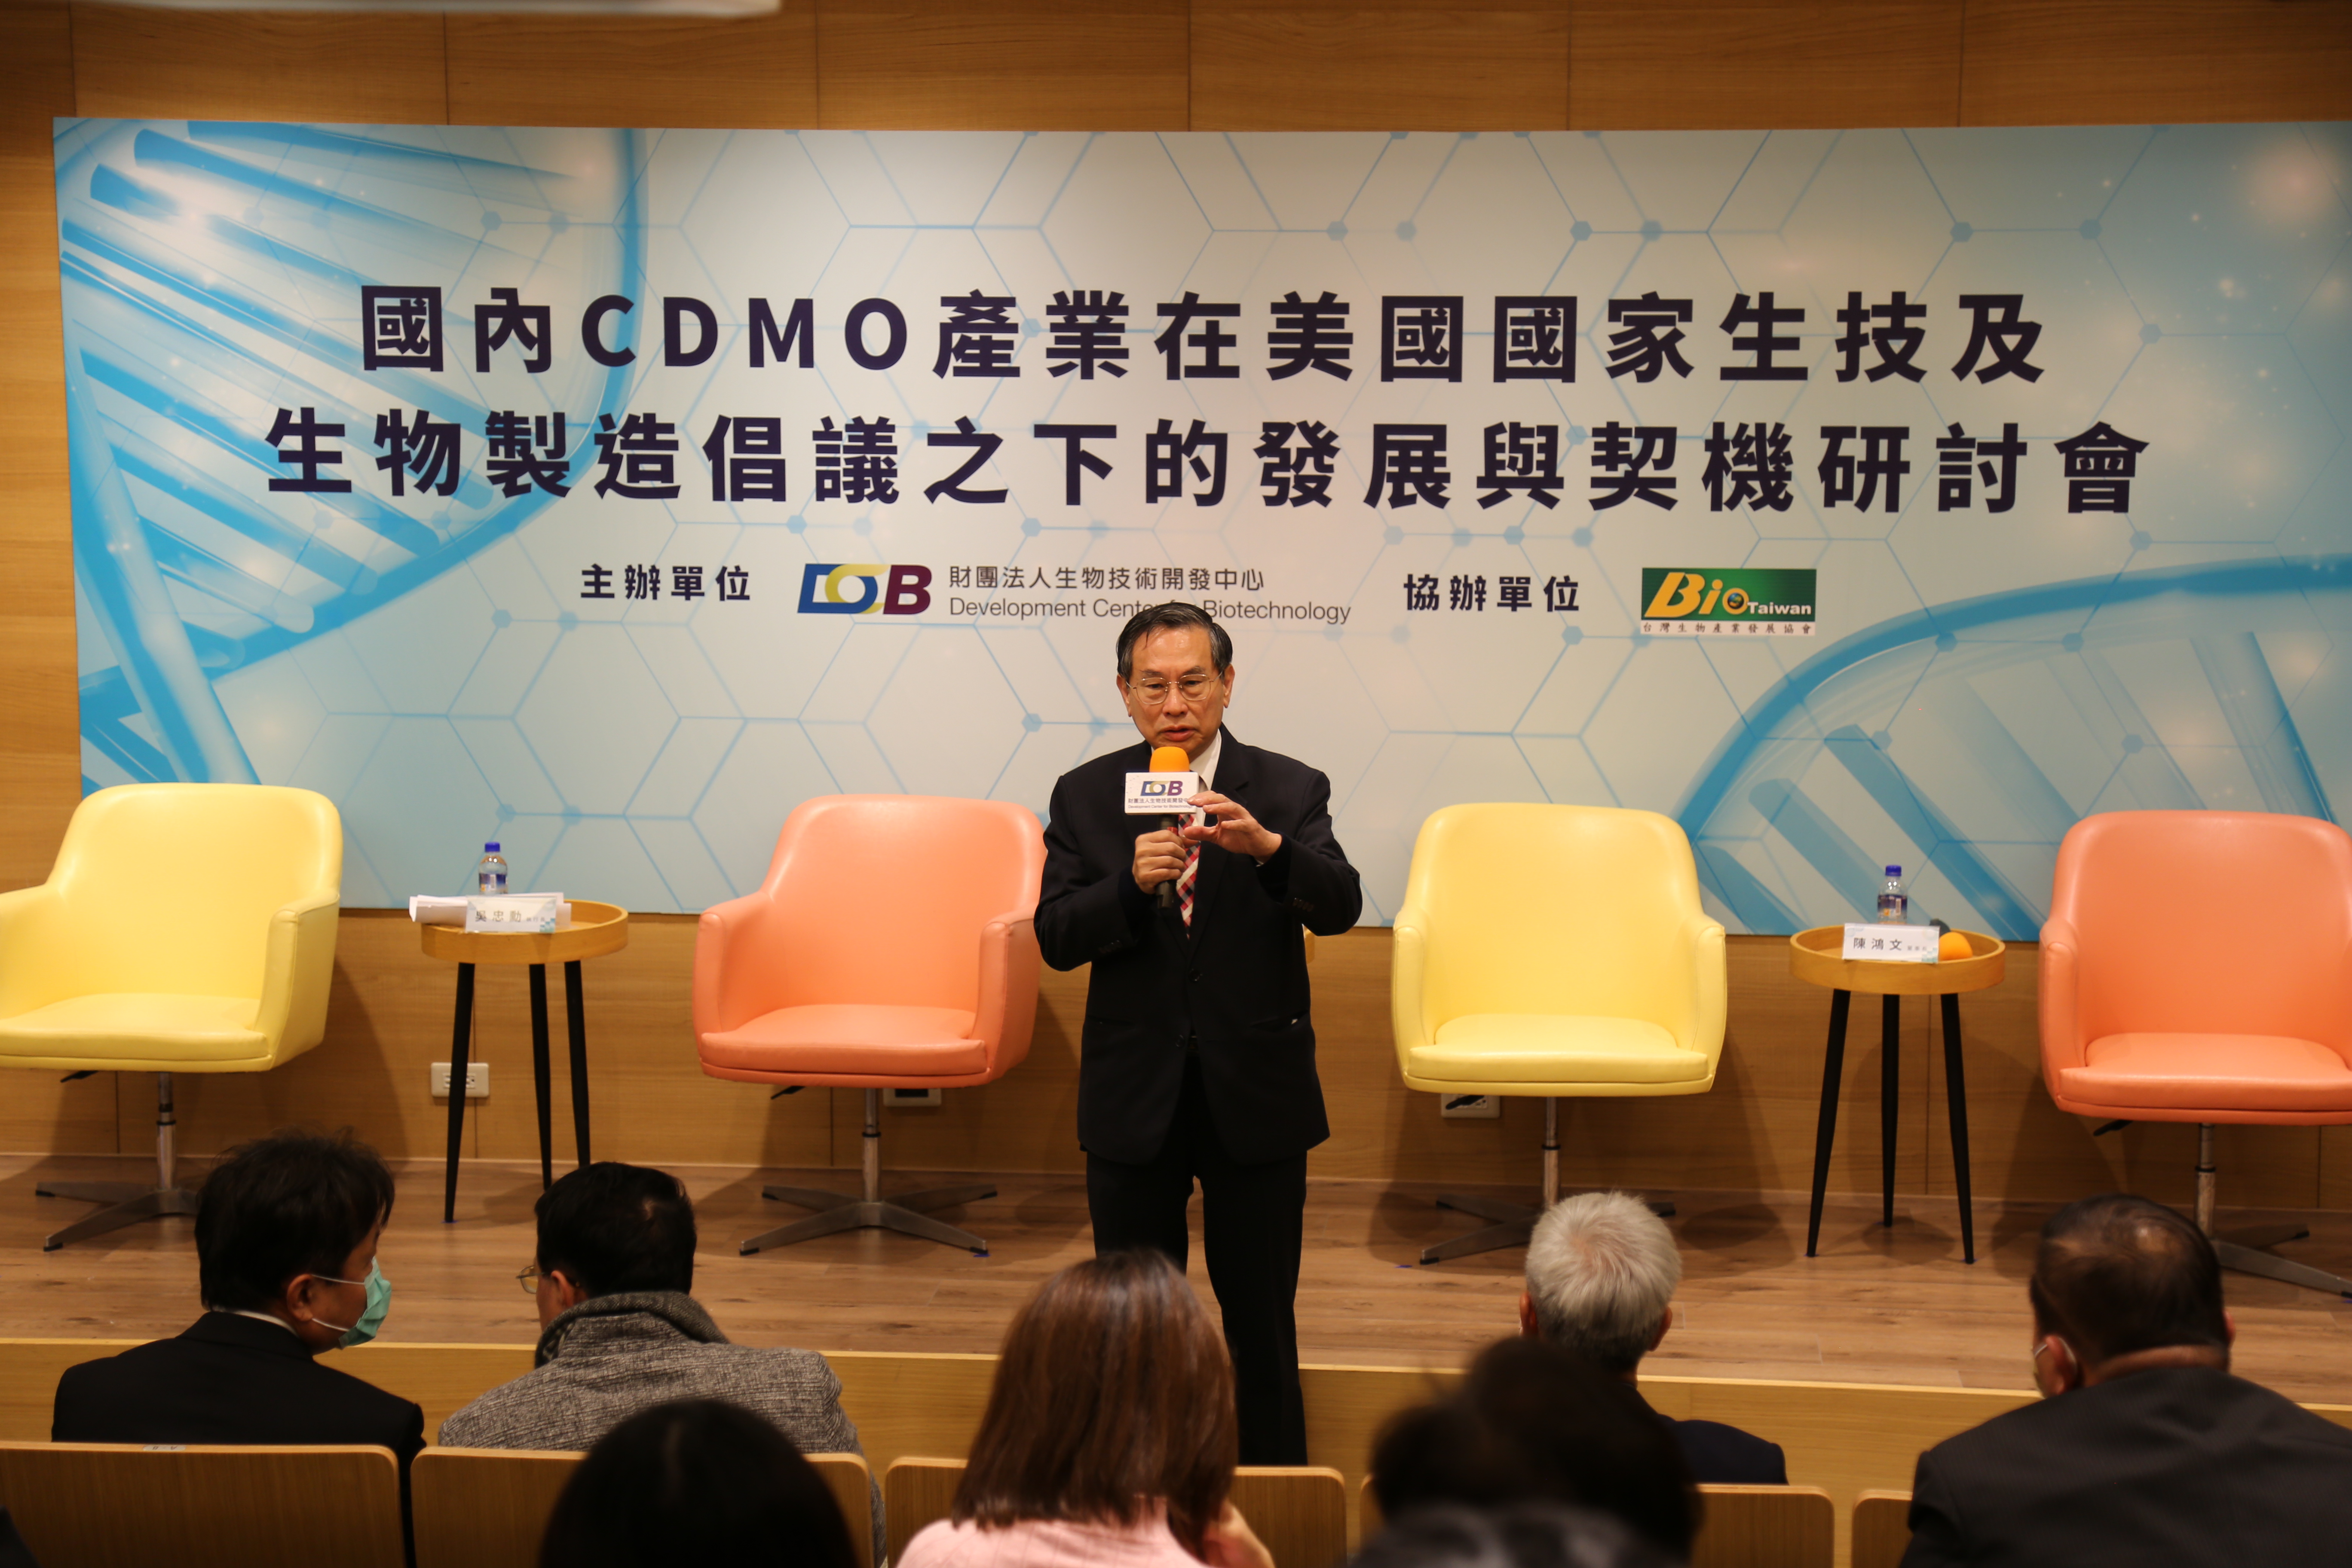 「國內CDMO產業在美國國家生技及生物製造倡議之下的發展與契機」研討會照片：生技中心涂醒哲董事長期許台灣的生物科技走向國際